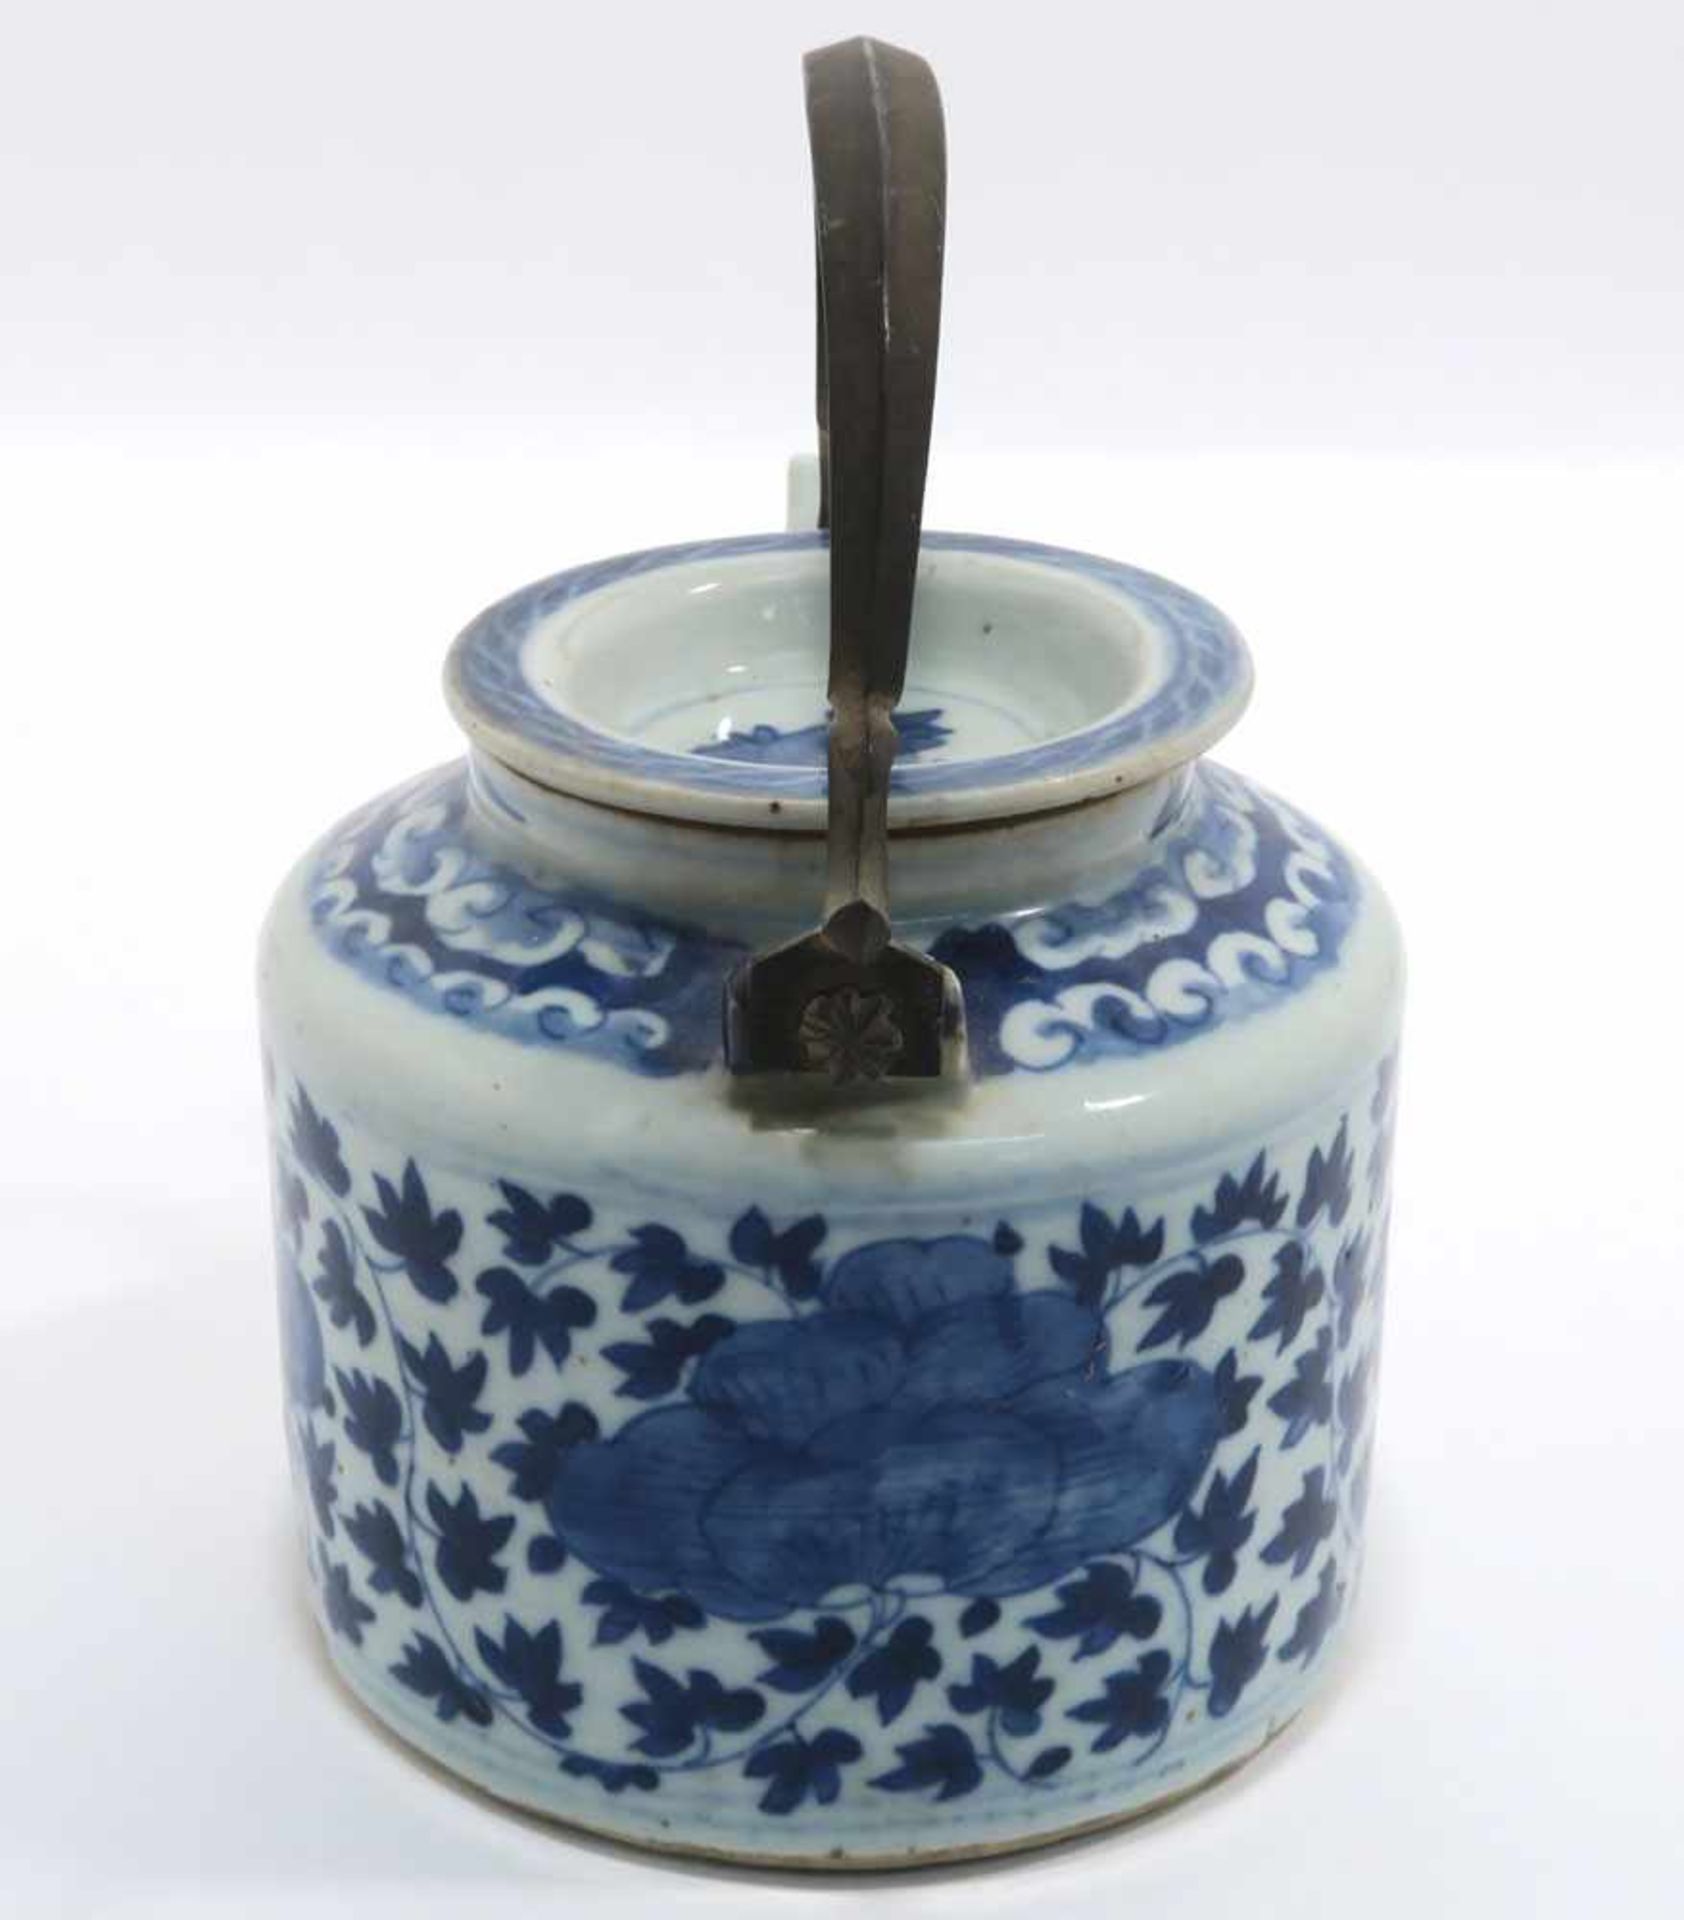 Zwei TeekannenChina. Porzellan. Floraler bzw. figürlicher Blaudekor. Metallhenkel. H. 11,5 cm bzw. - Bild 4 aus 15